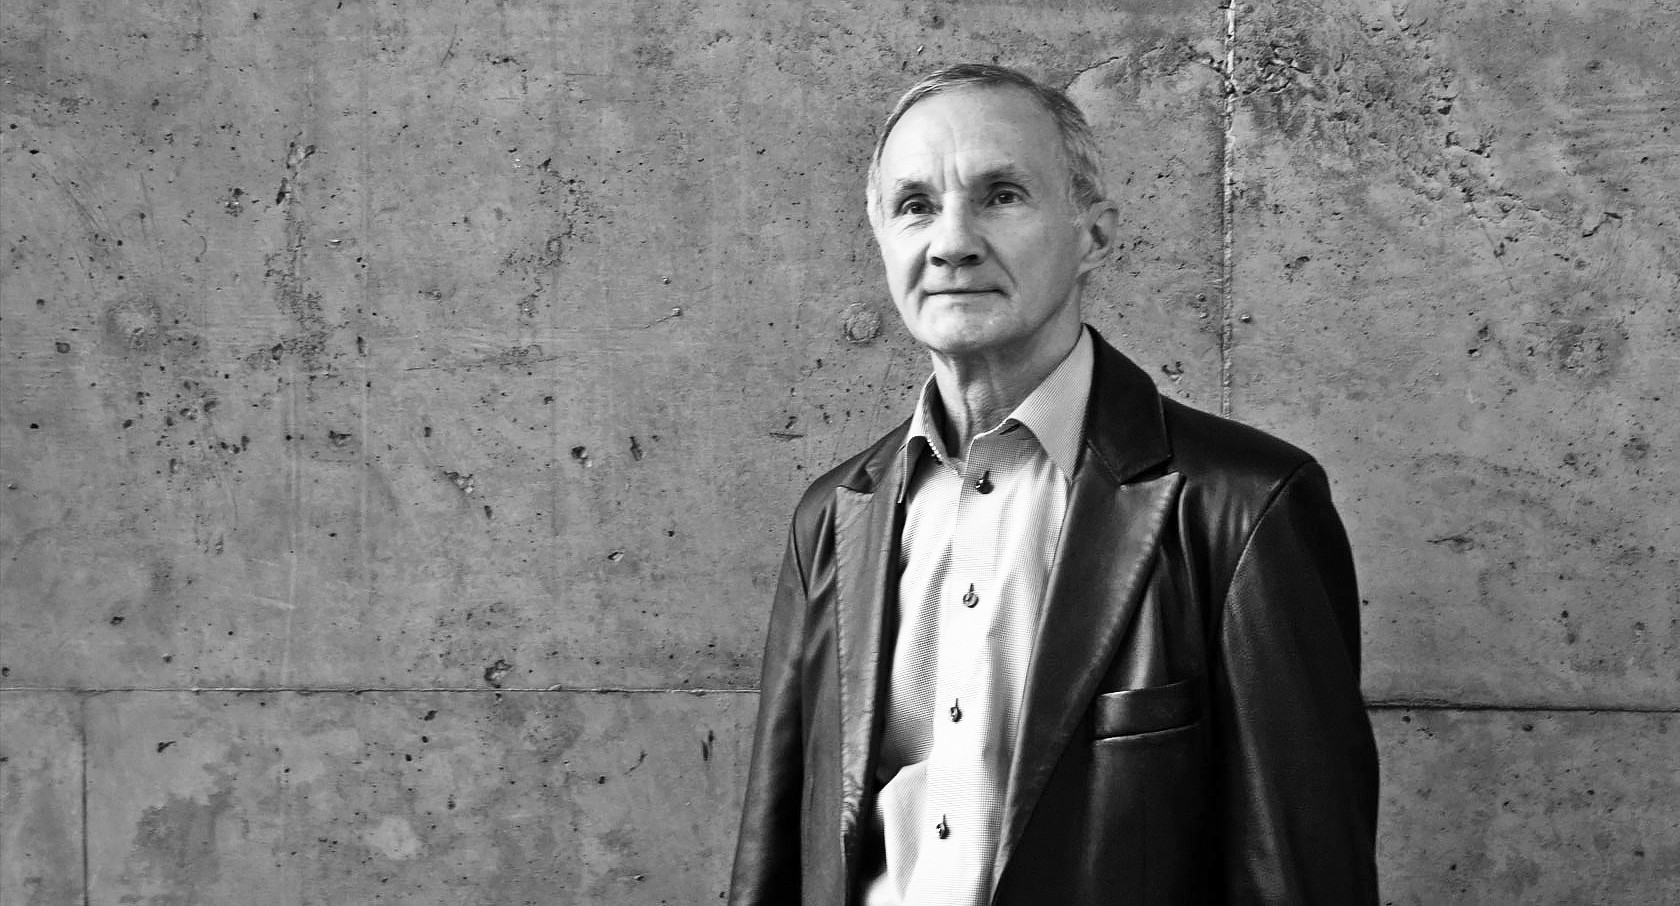 Portrait de carrière : entrevue avec Michel Dupuis, architecte directeur retraité